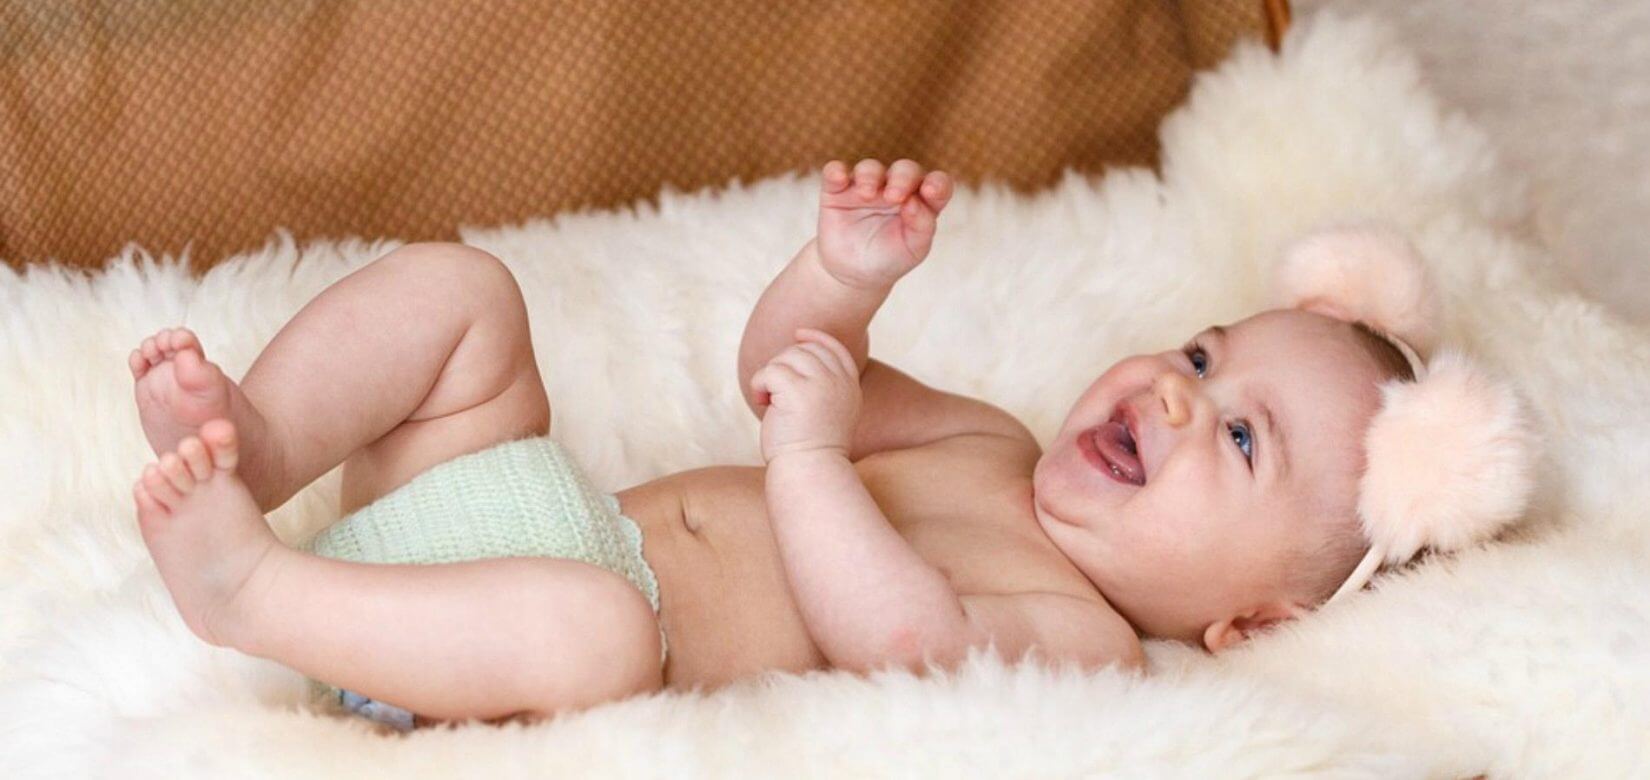 Παγκόσμια ημέρα γέλιου: 5+1 μωράκια γελούν με την ψυχή τους και εμείς «λιώνουμε» (video)